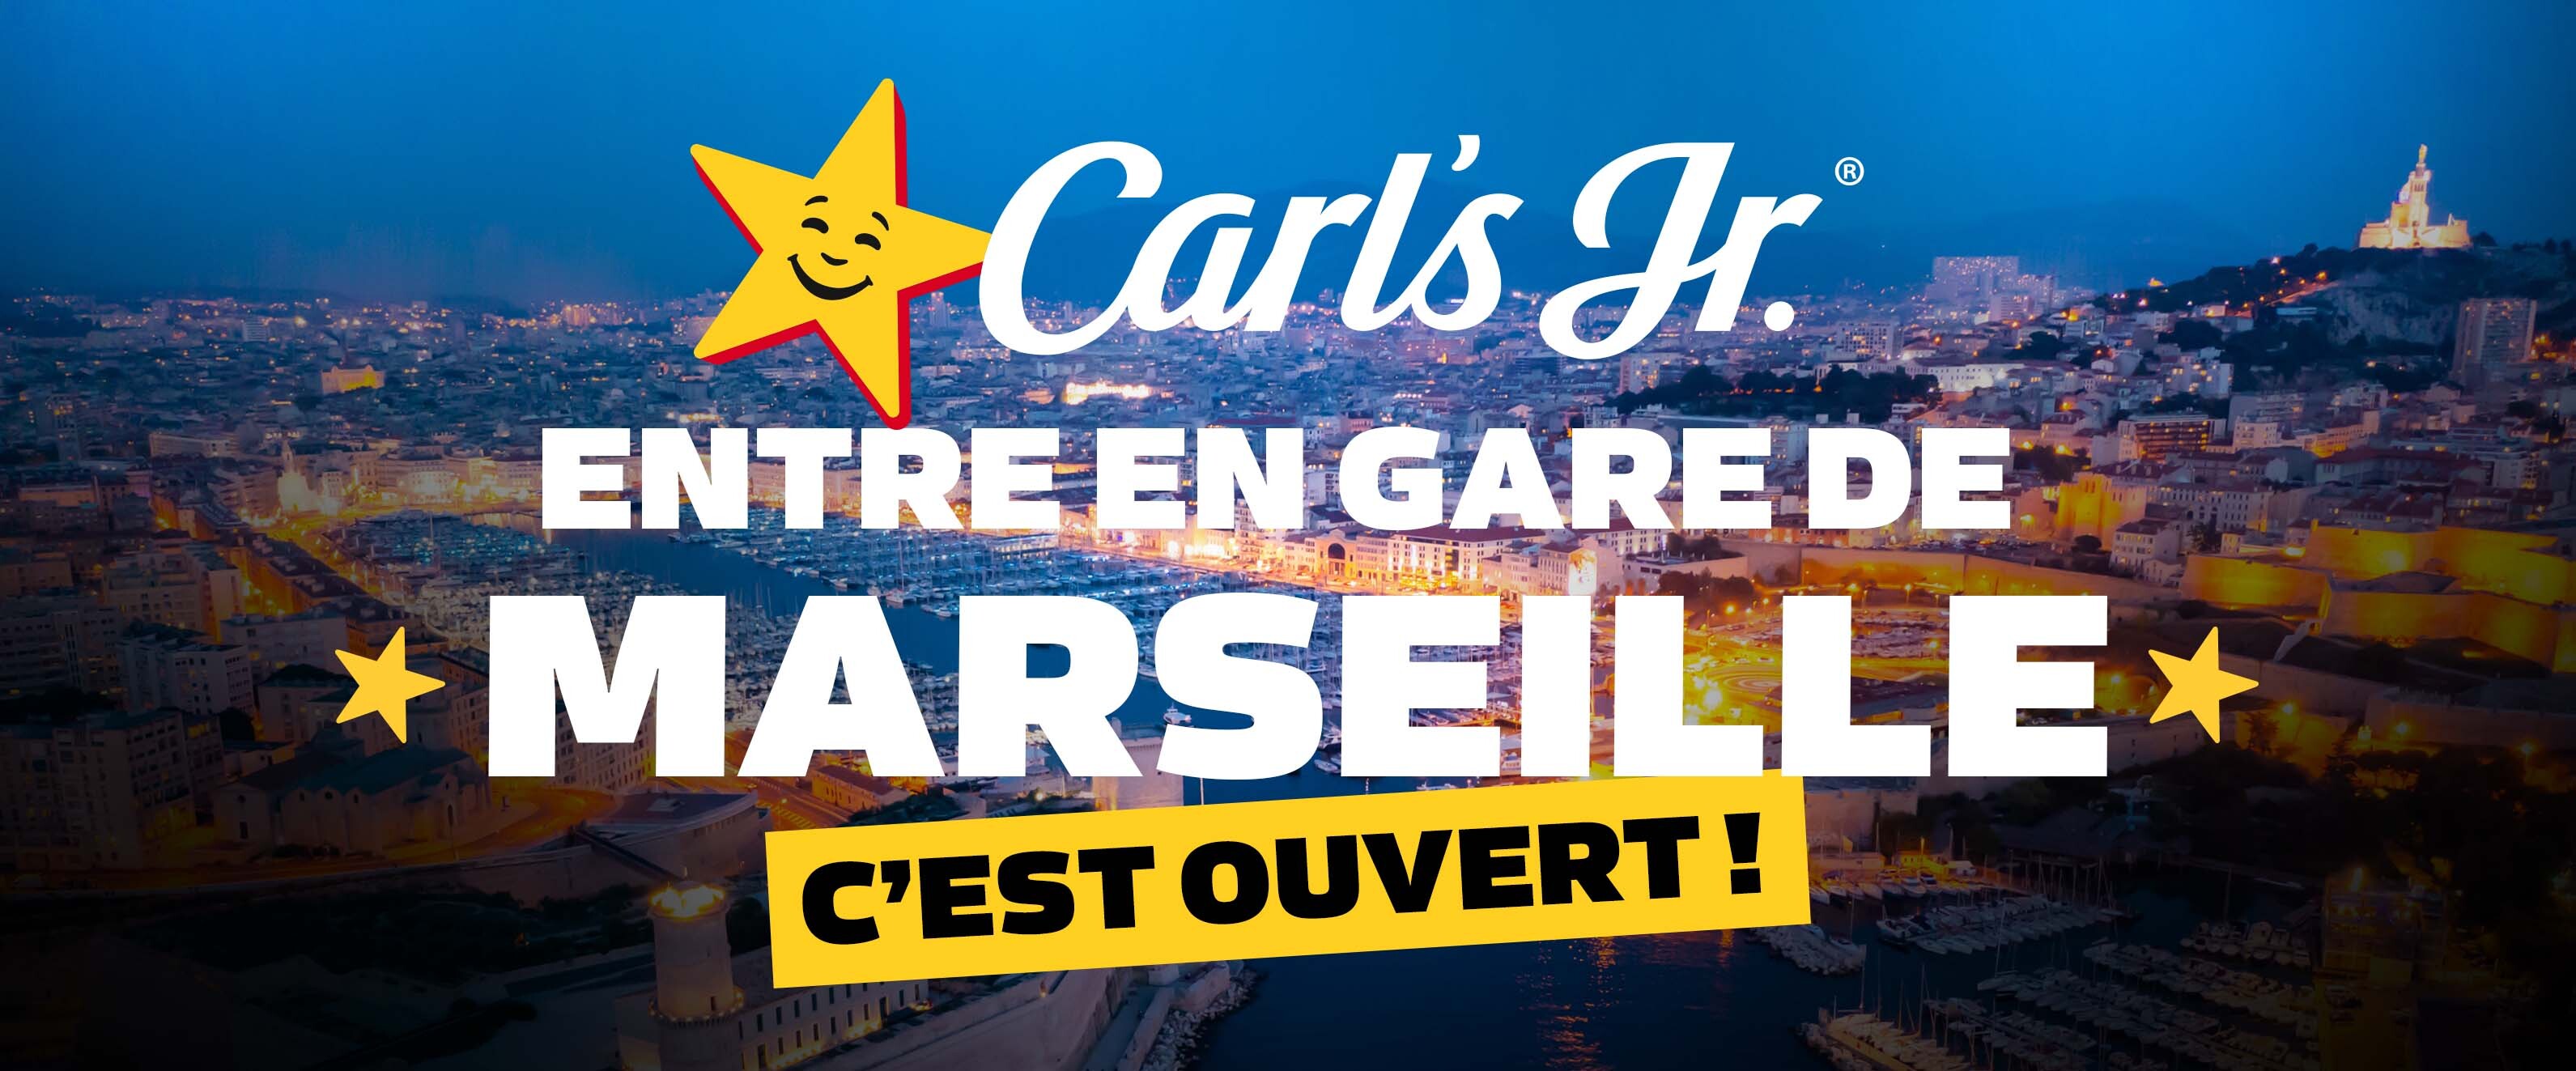 Carl's Jr. entre en gare de Marseille - C'EST OUVERT !